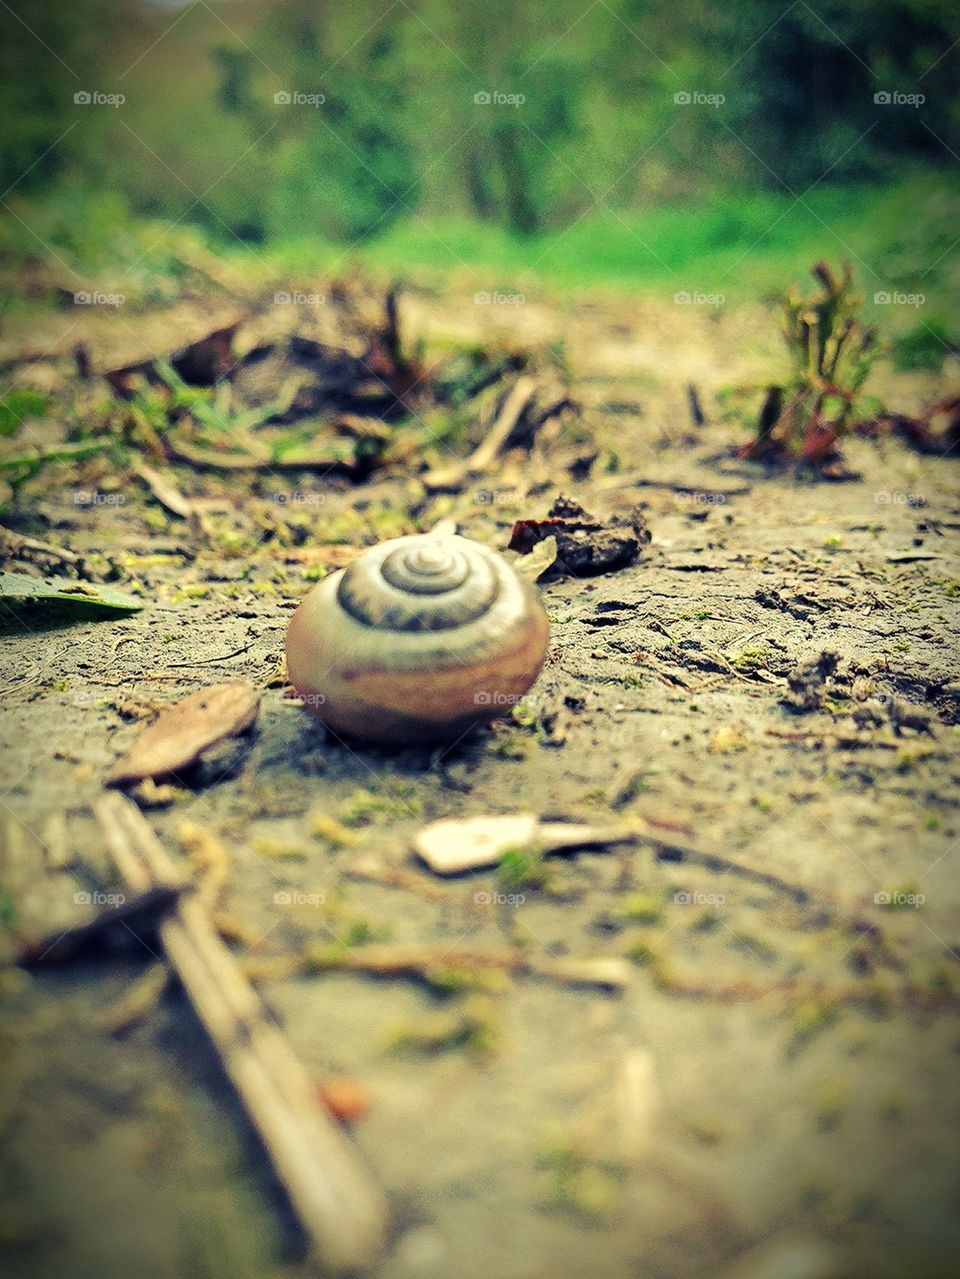 Snail Trail 